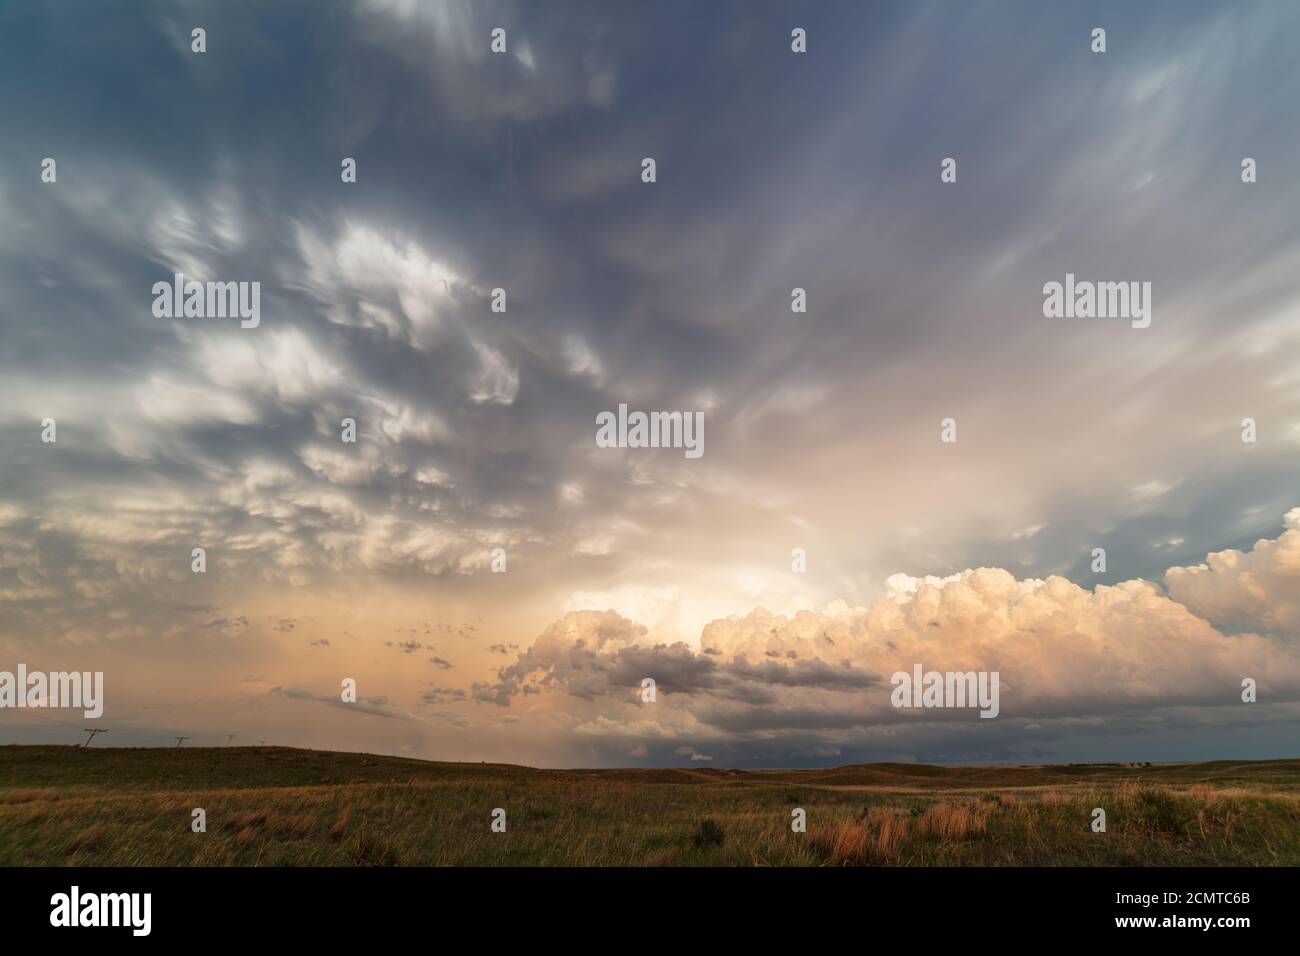 Espectacular cielo de puesta de sol con nubes de tormenta cerca de Gordon, Nebraska Foto de stock